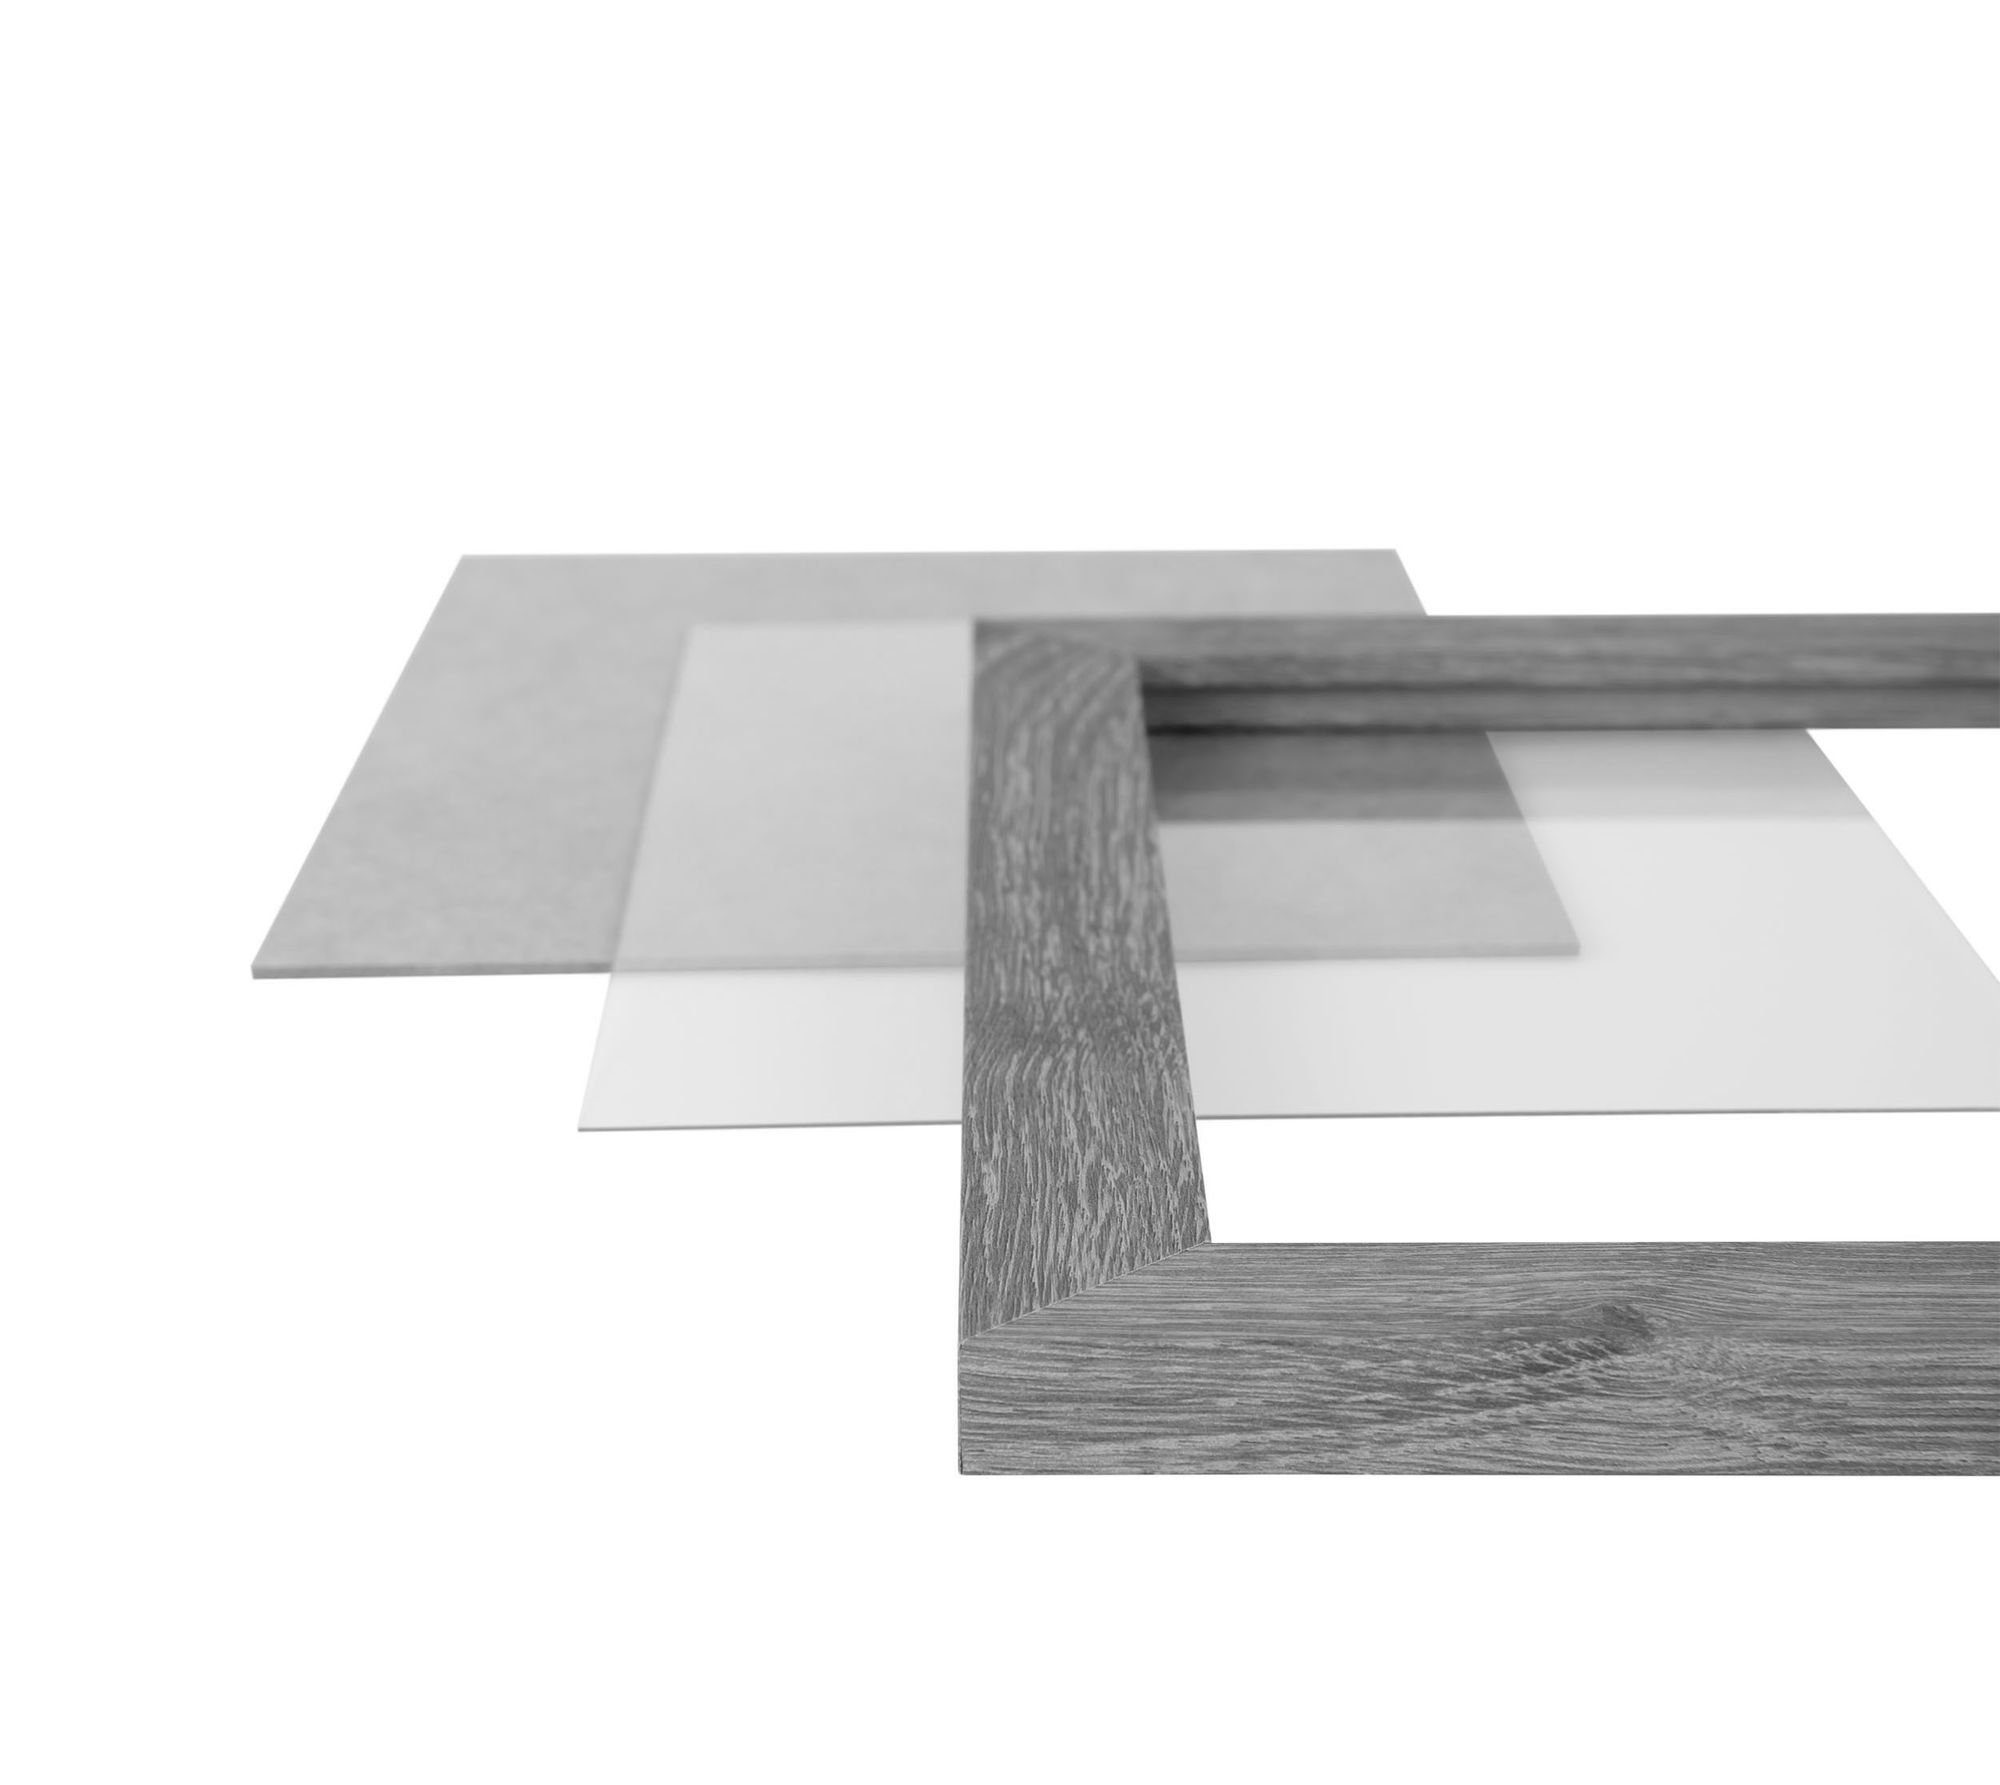 Maß Clamaro Rückwand CLAMARO Moderner Rahmen eckiger Aufhänger 'Collage' handgefertigt nach Bilderrahmen gebürstet in Acrylglas, MDF FSC® silber 32,7x94,8 und Holz Bilderrahmen inkl.